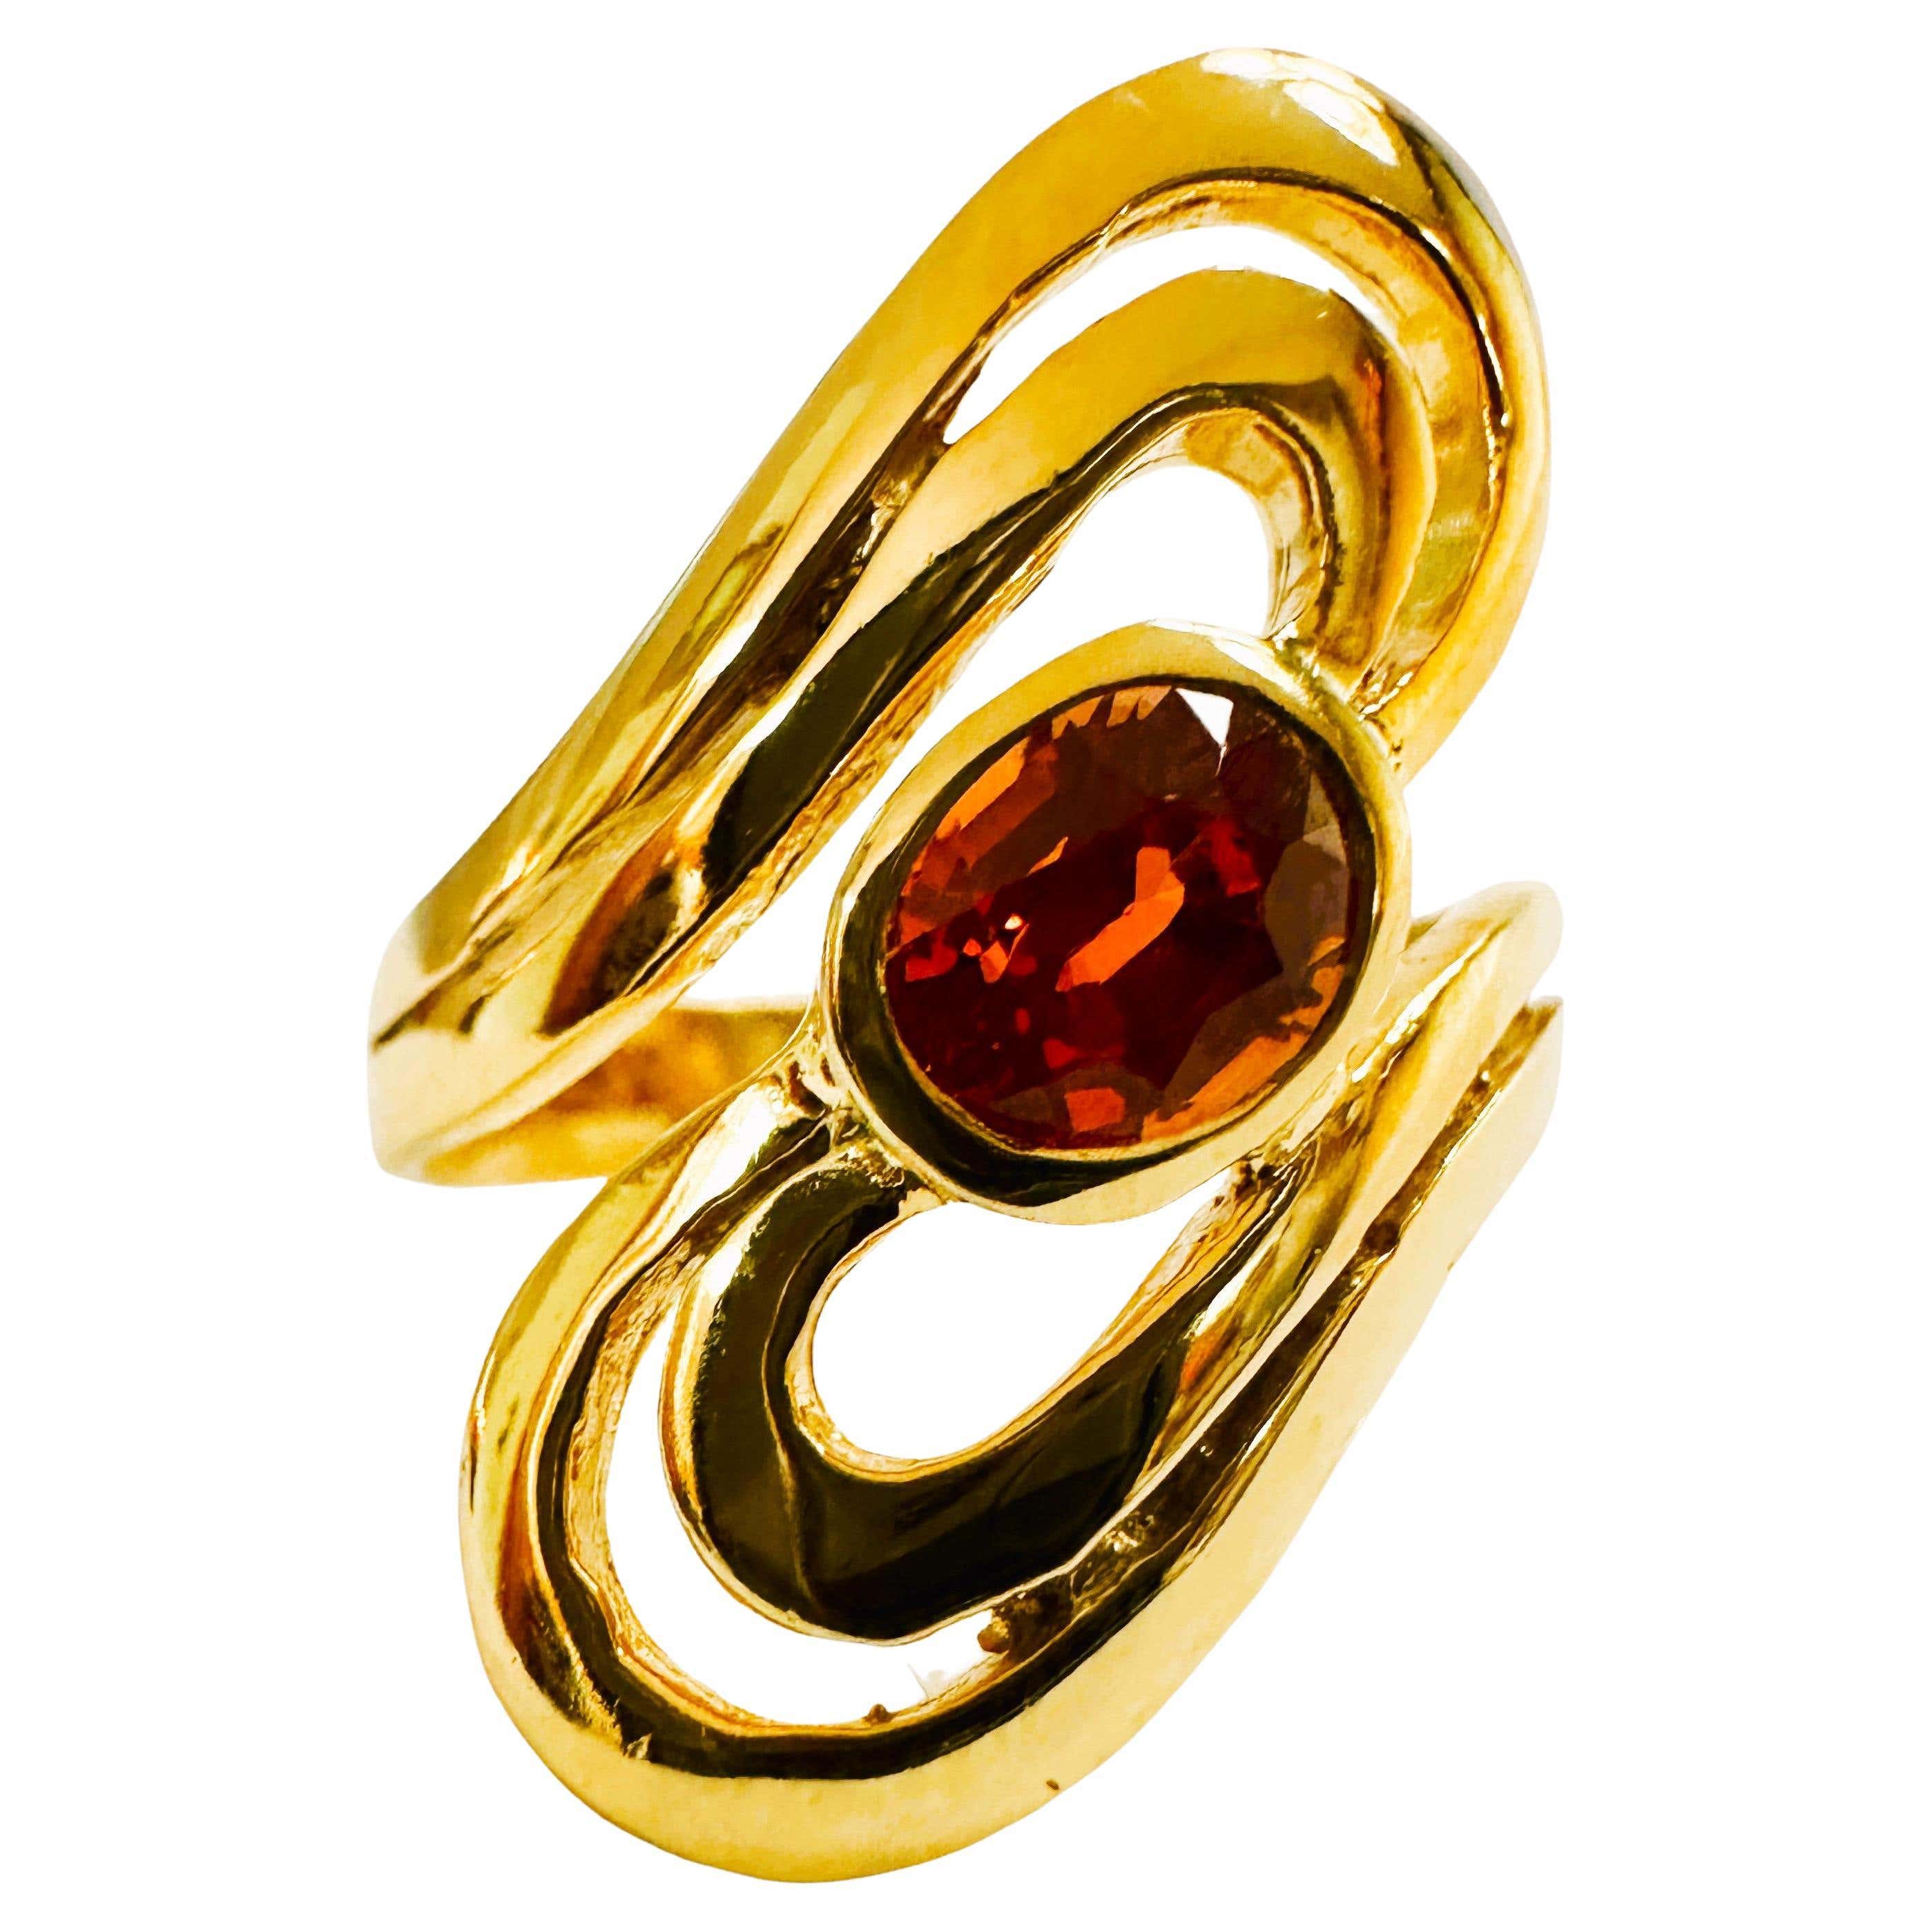 Nuevo anillo africano de 1,3 ct de granate naranja mandarín chapado en oro amarillo de ley